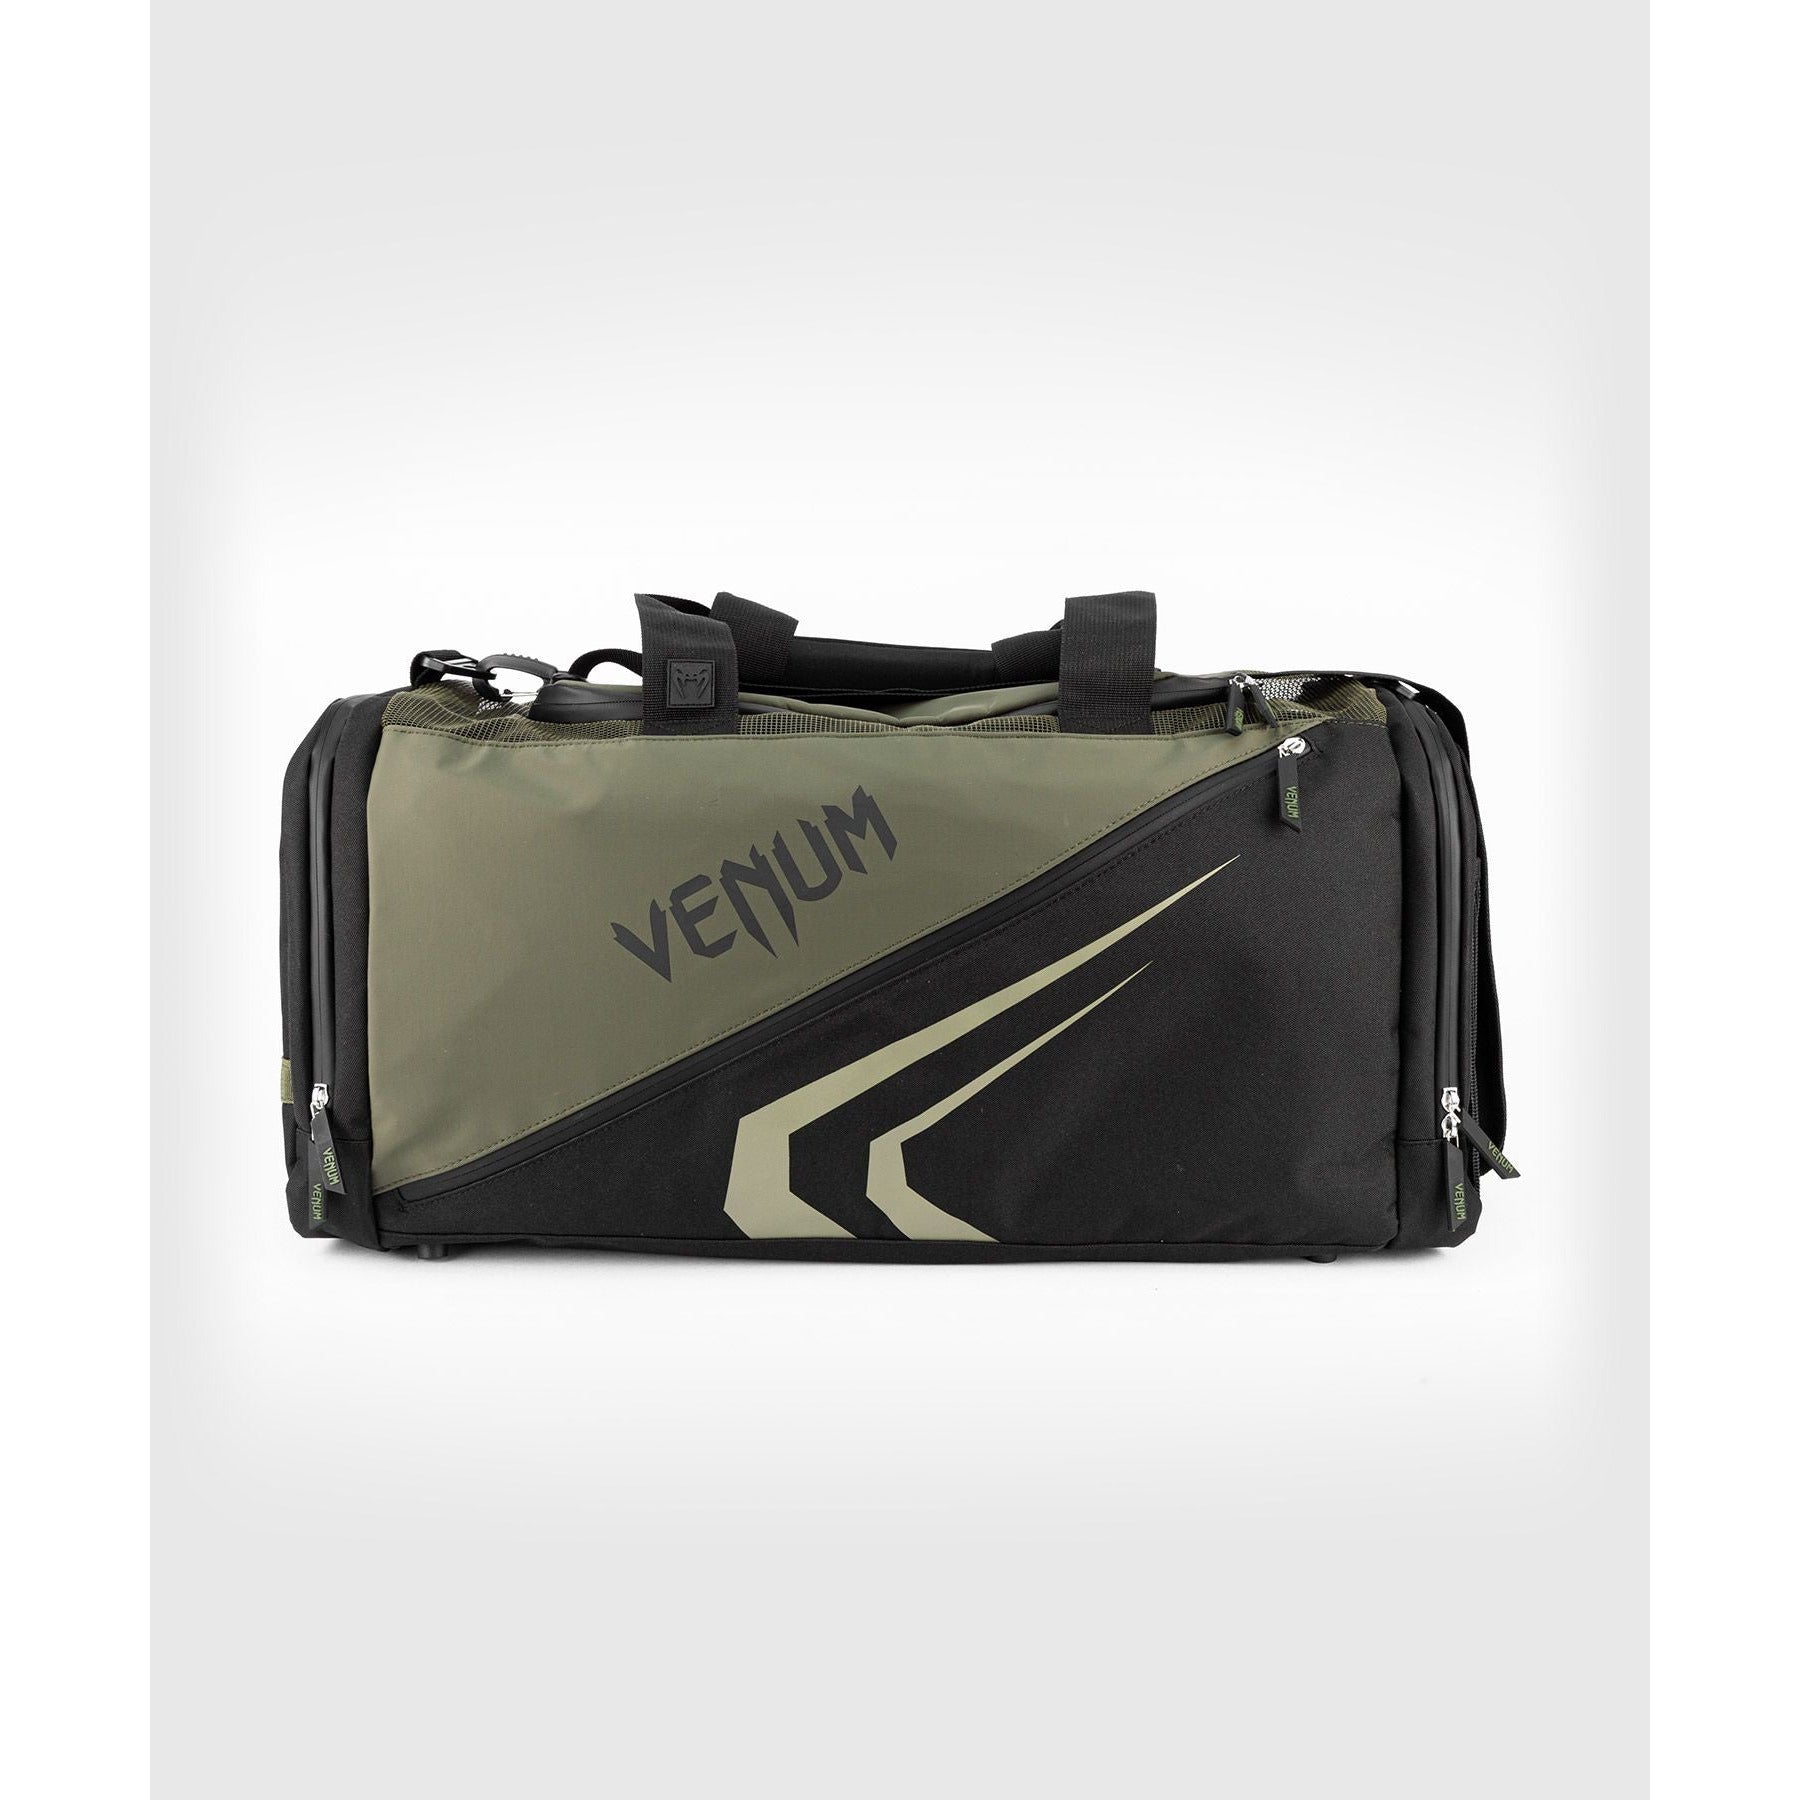 Venum Trainer Lite Evo Sports Bag - Khaki/Black